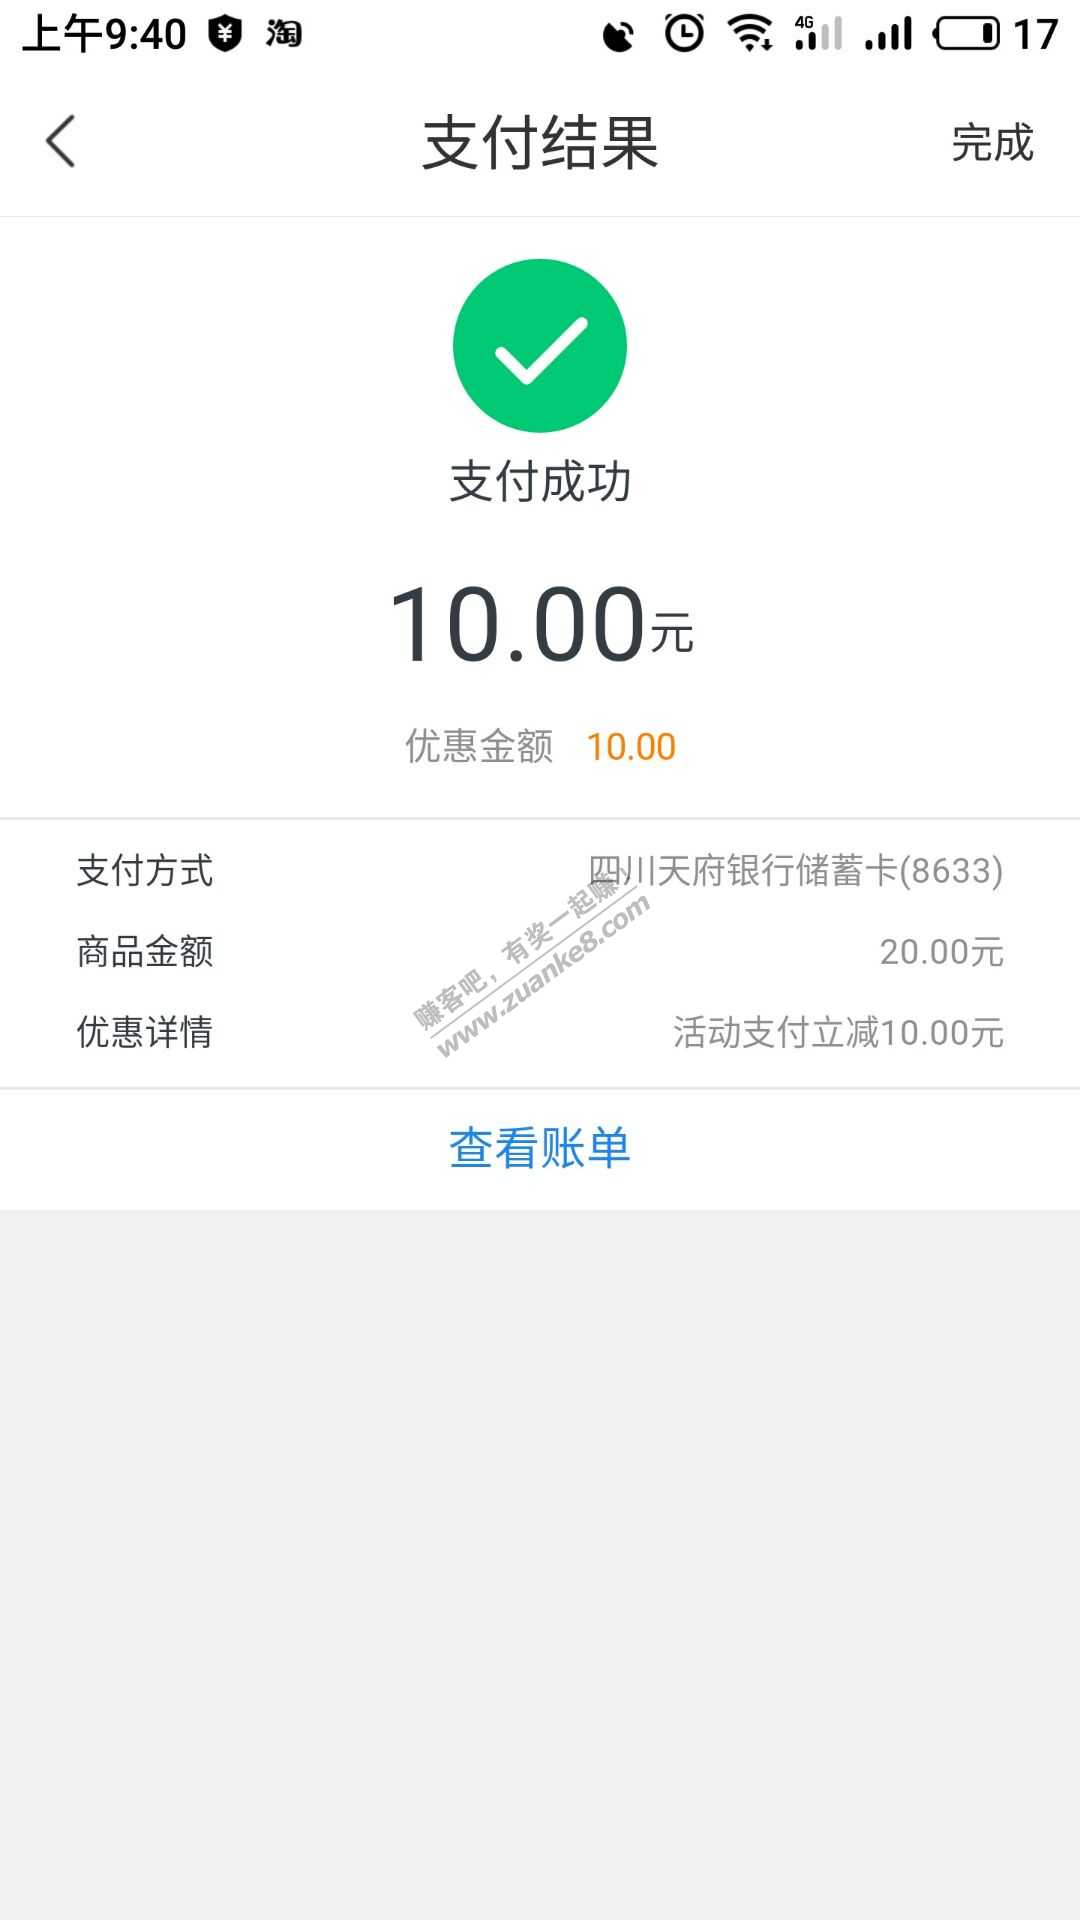 20-10   天府银行-惠小助(52huixz.com)